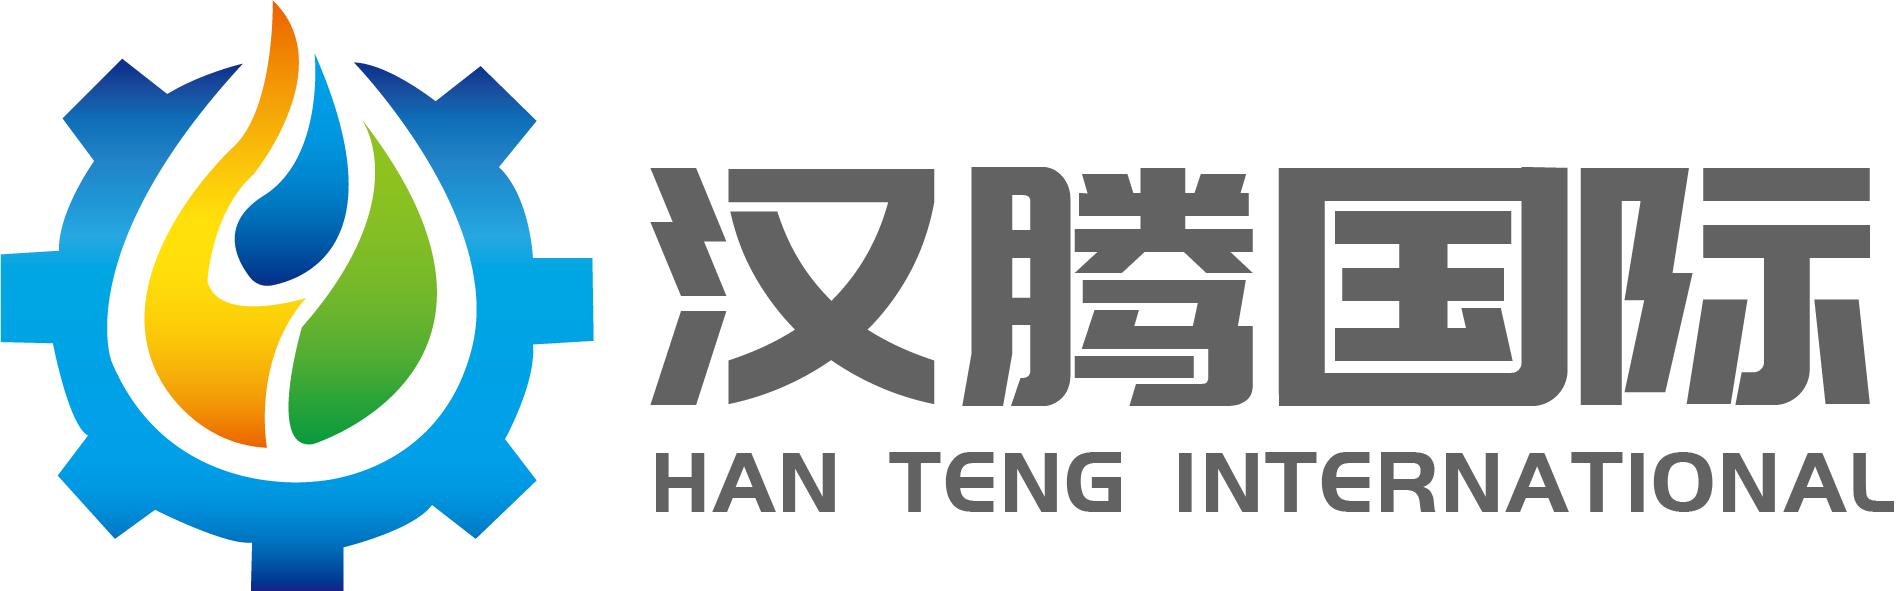 Shandong Hanteng International Trade Co., Ltd.